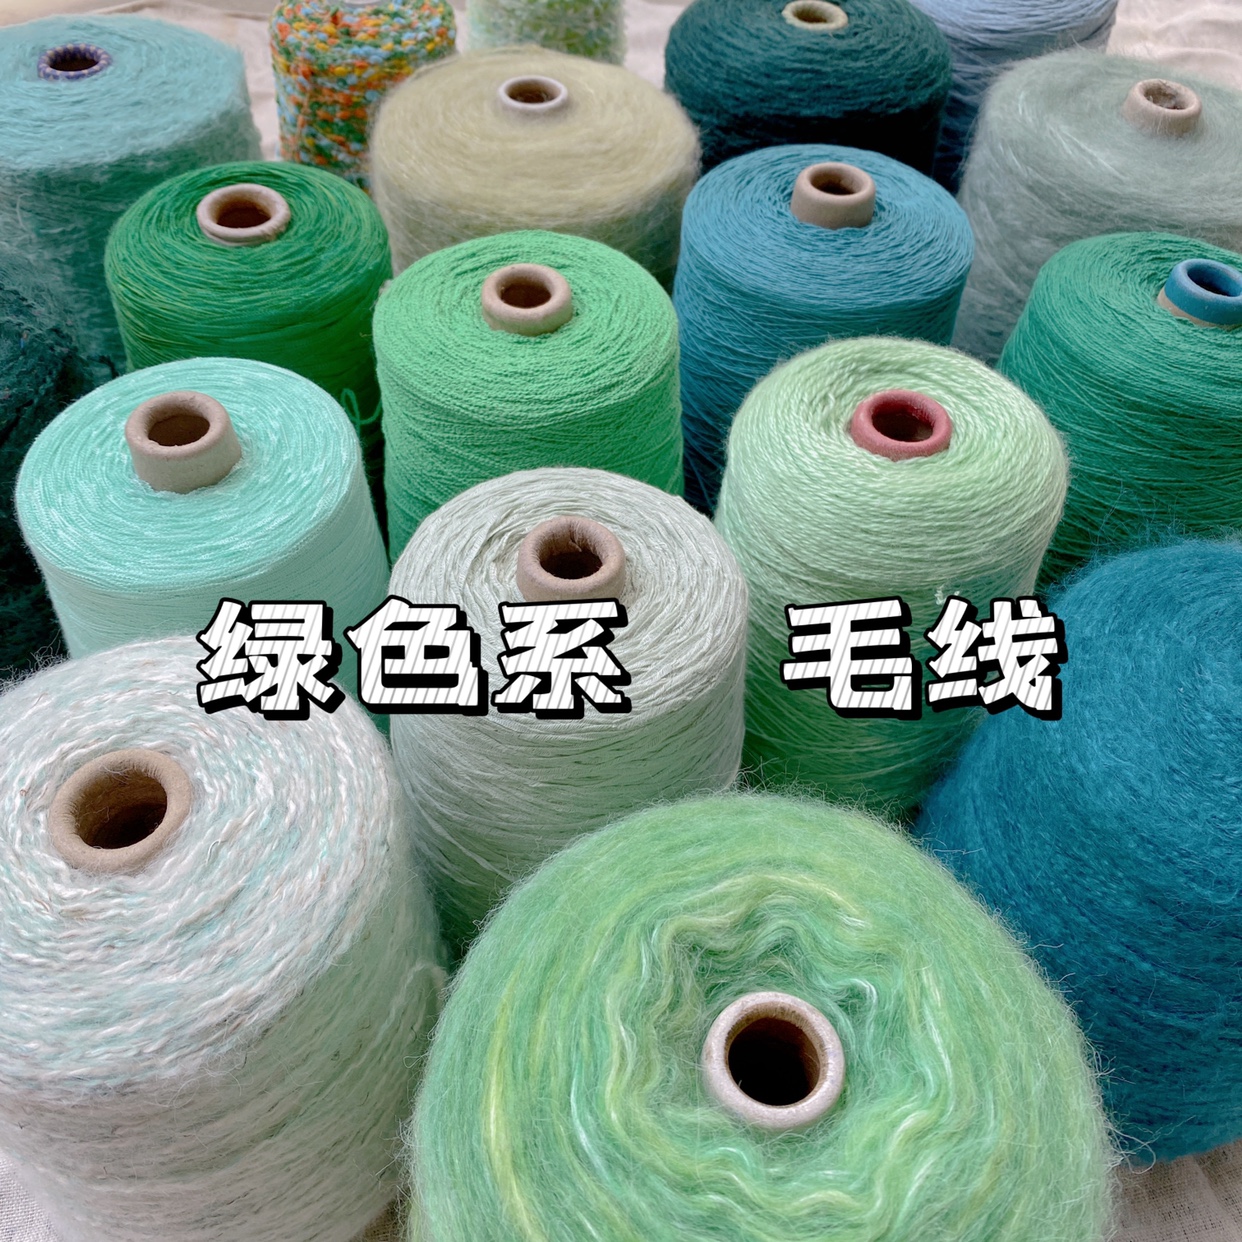 标价一大桶价格 各种绿色系 纯棉蕾丝带子羊毛马海手工编织线包邮